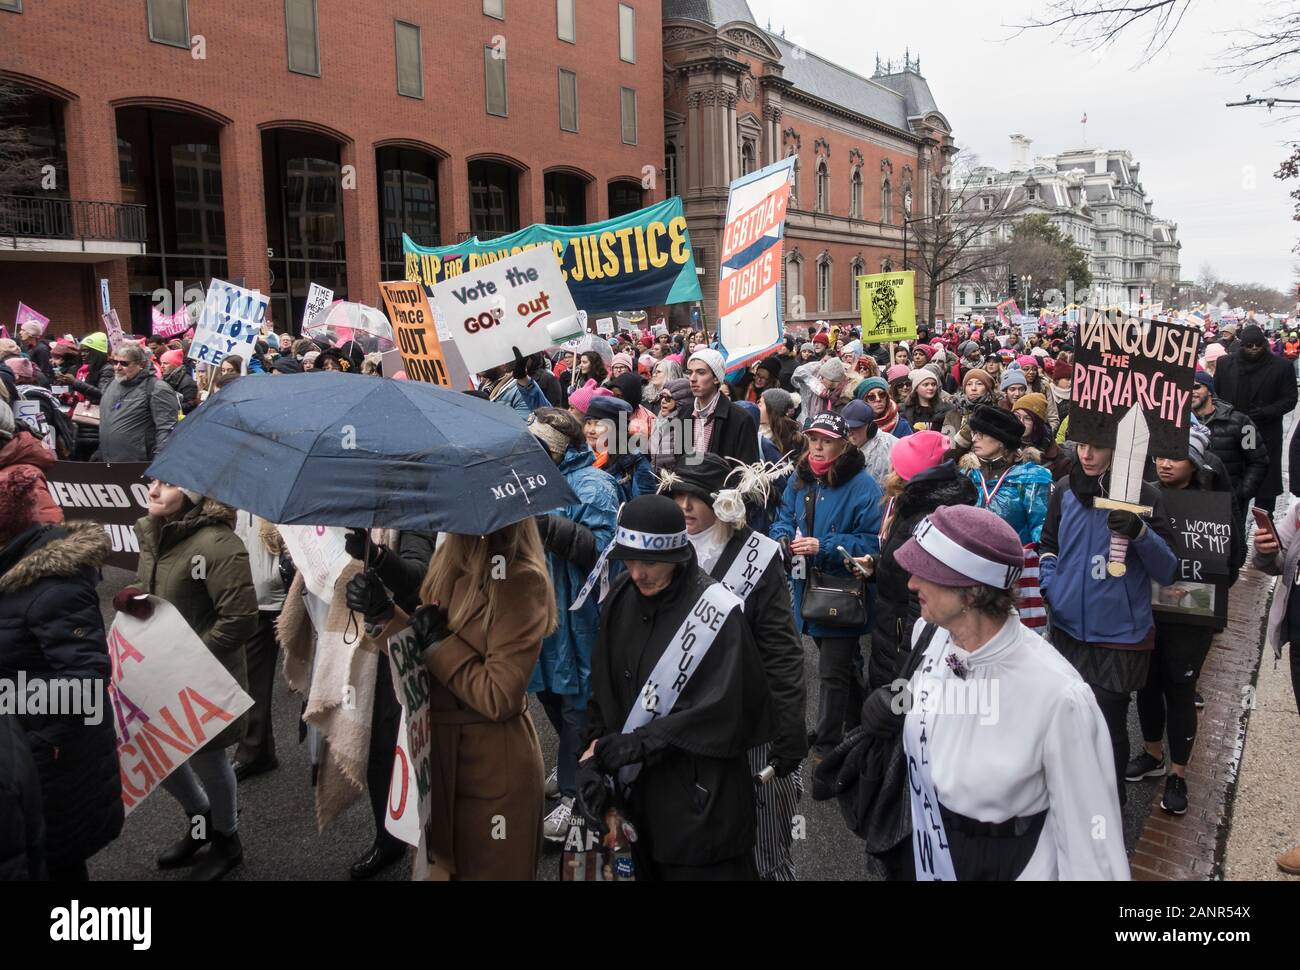 WASHINGTON, DC - JAN. 18, 2020 : marcheurs de emphatique de la Marche des femmes 2020, c'était la 4e édition de la Marche des femmes, et l'une des nombreuses marches autour du nous. Banque D'Images